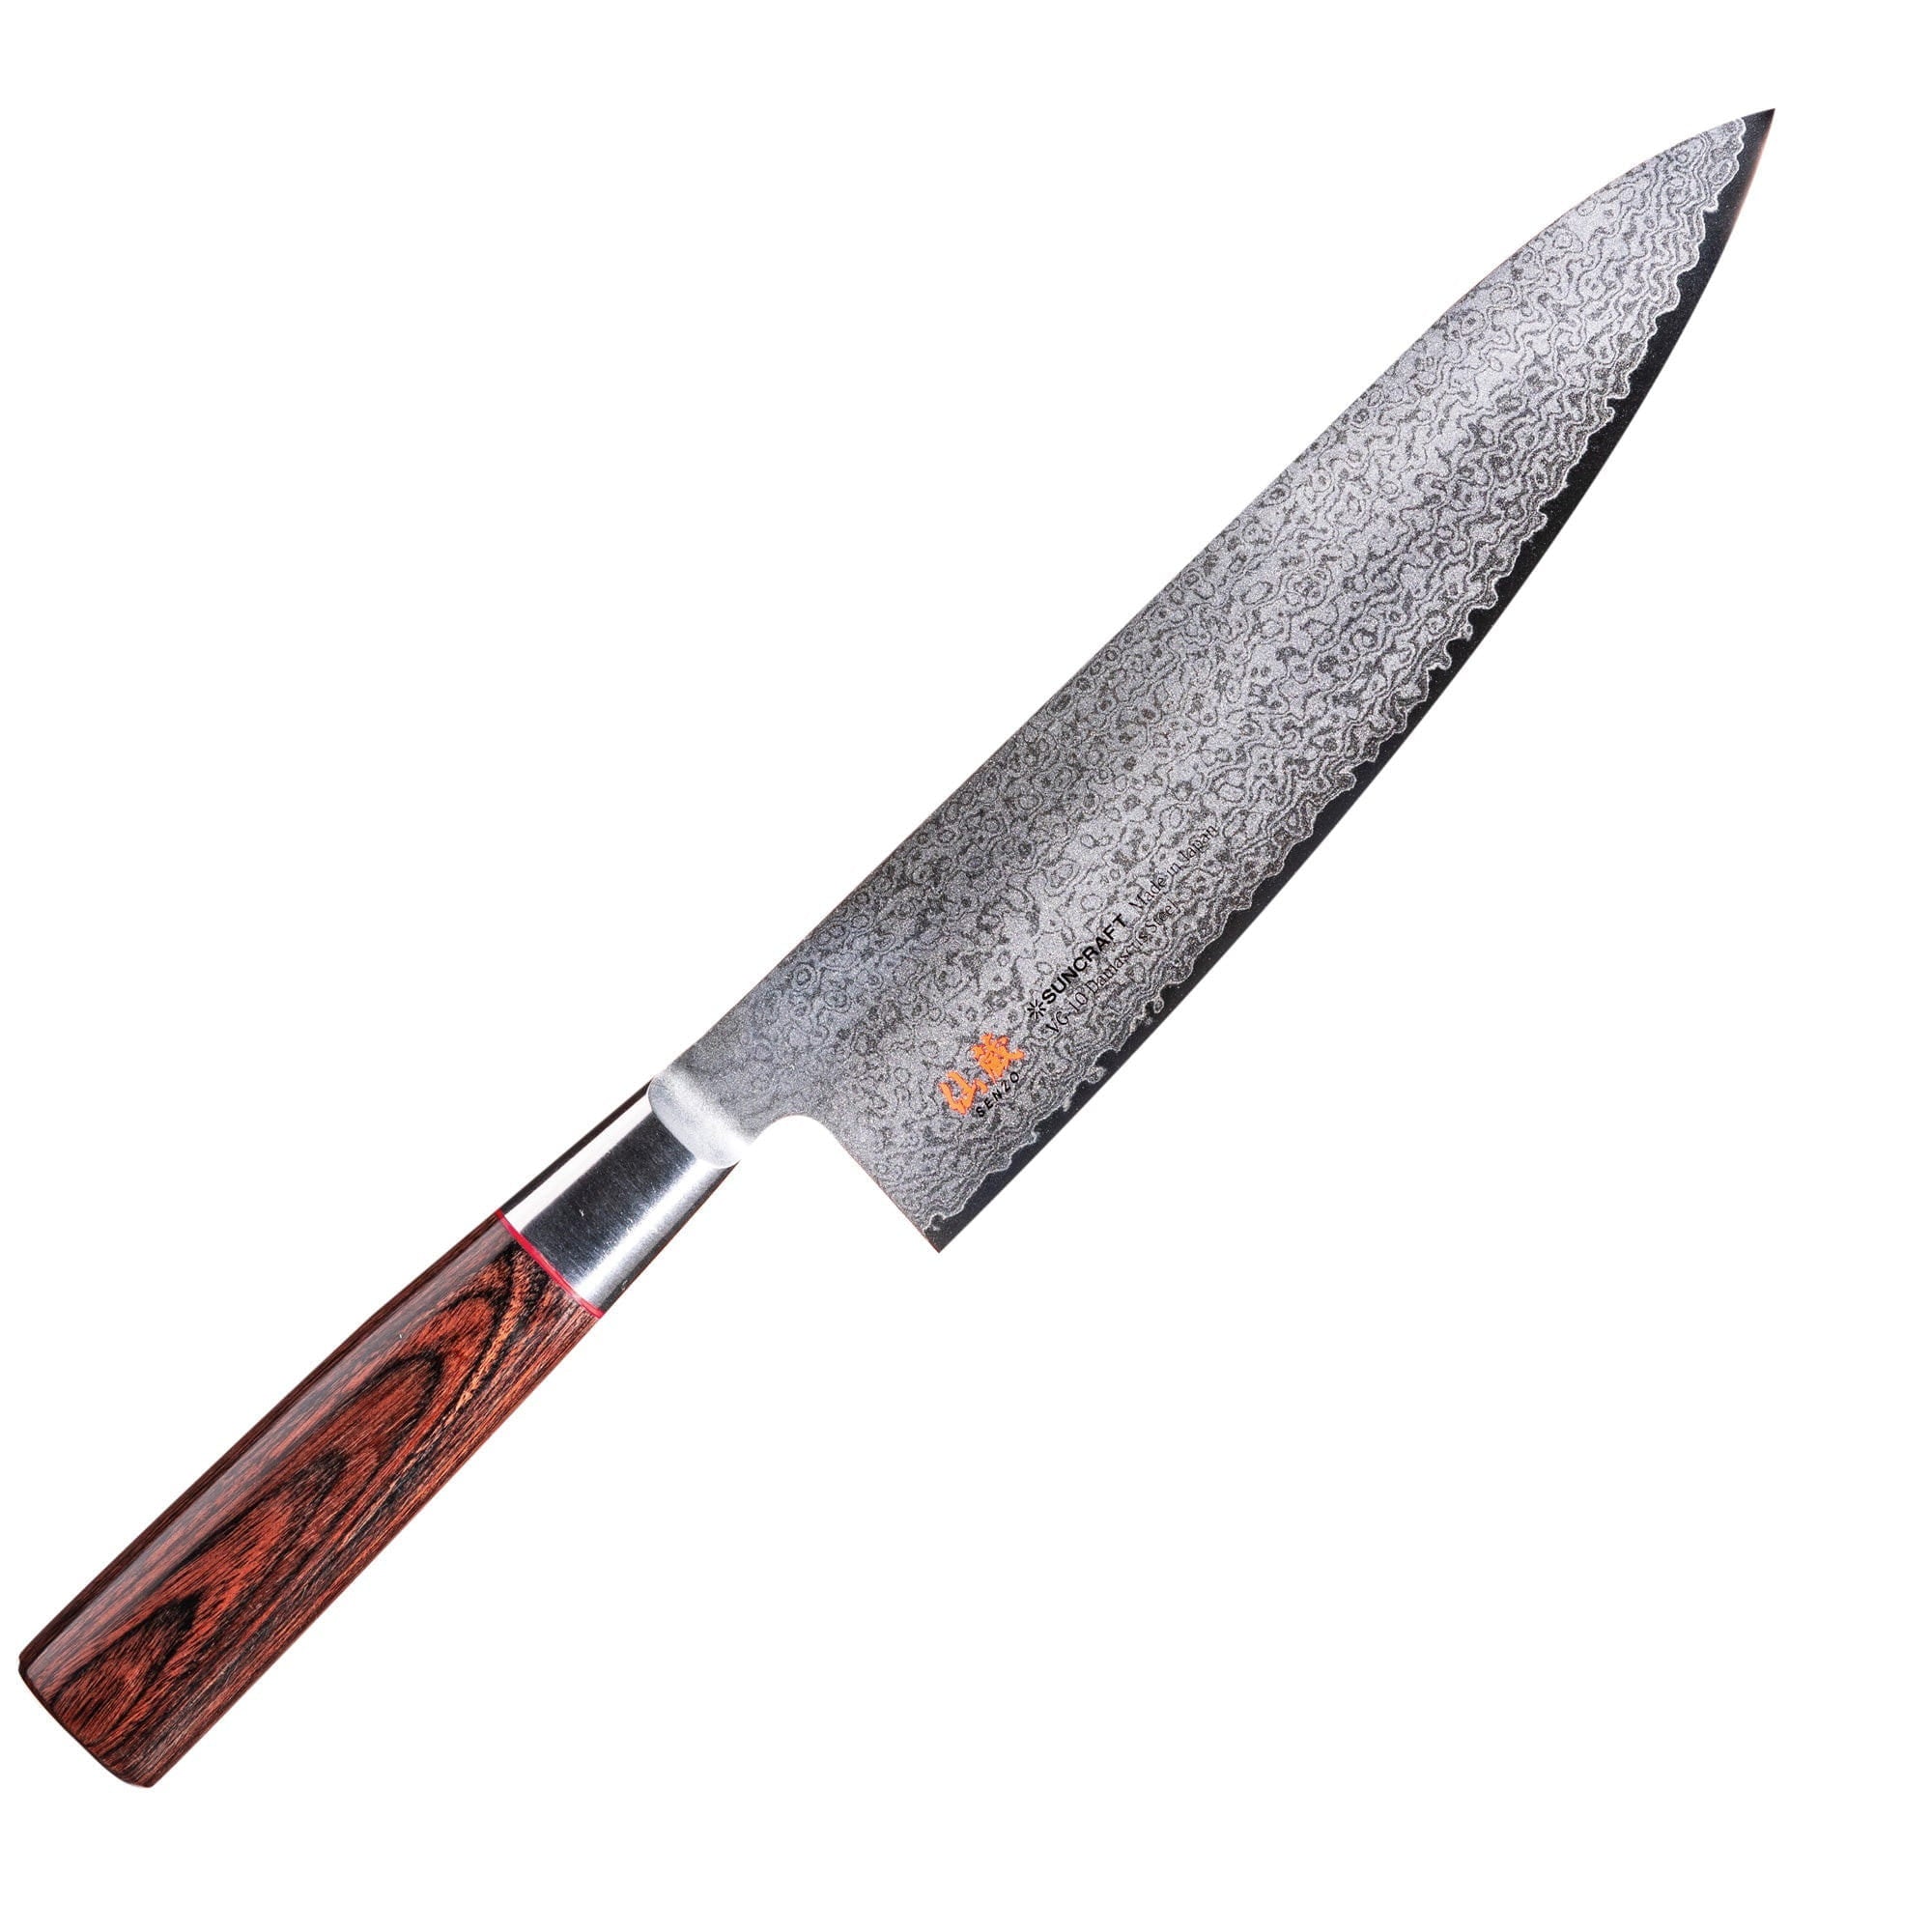 Senzo Classic ID-05 kockkniv, 20 cm